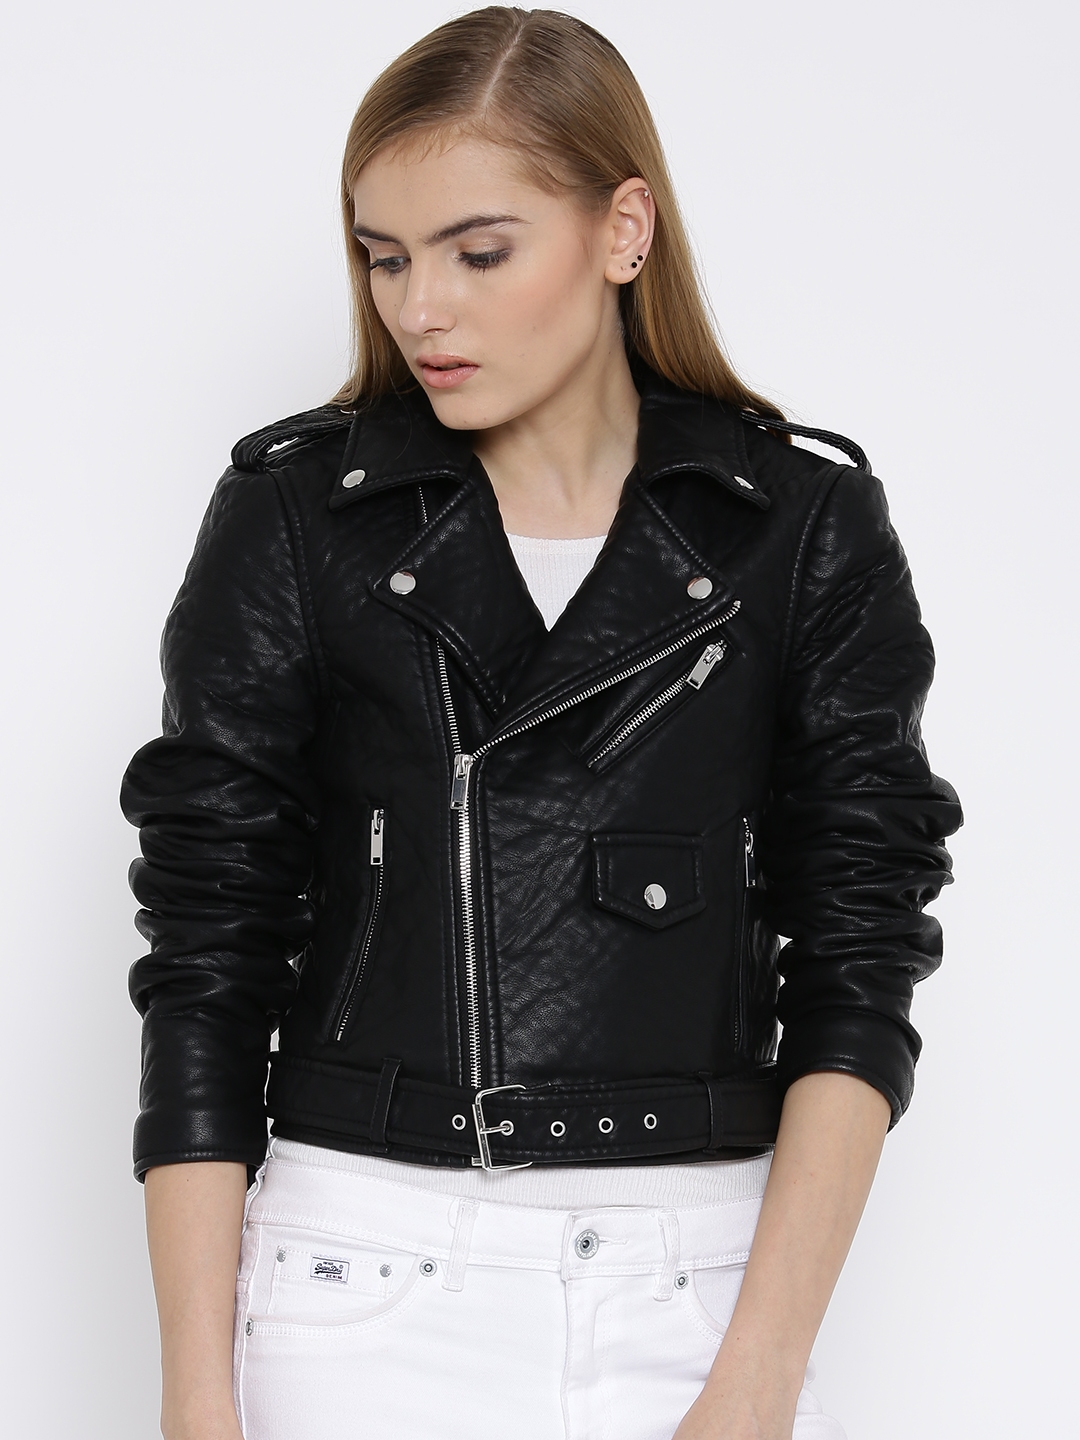 Bi Wardian sag Gå ud Buy Vero Moda Black Faux Leather Biker Jacket - Jackets for Women 1475905 |  Myntra